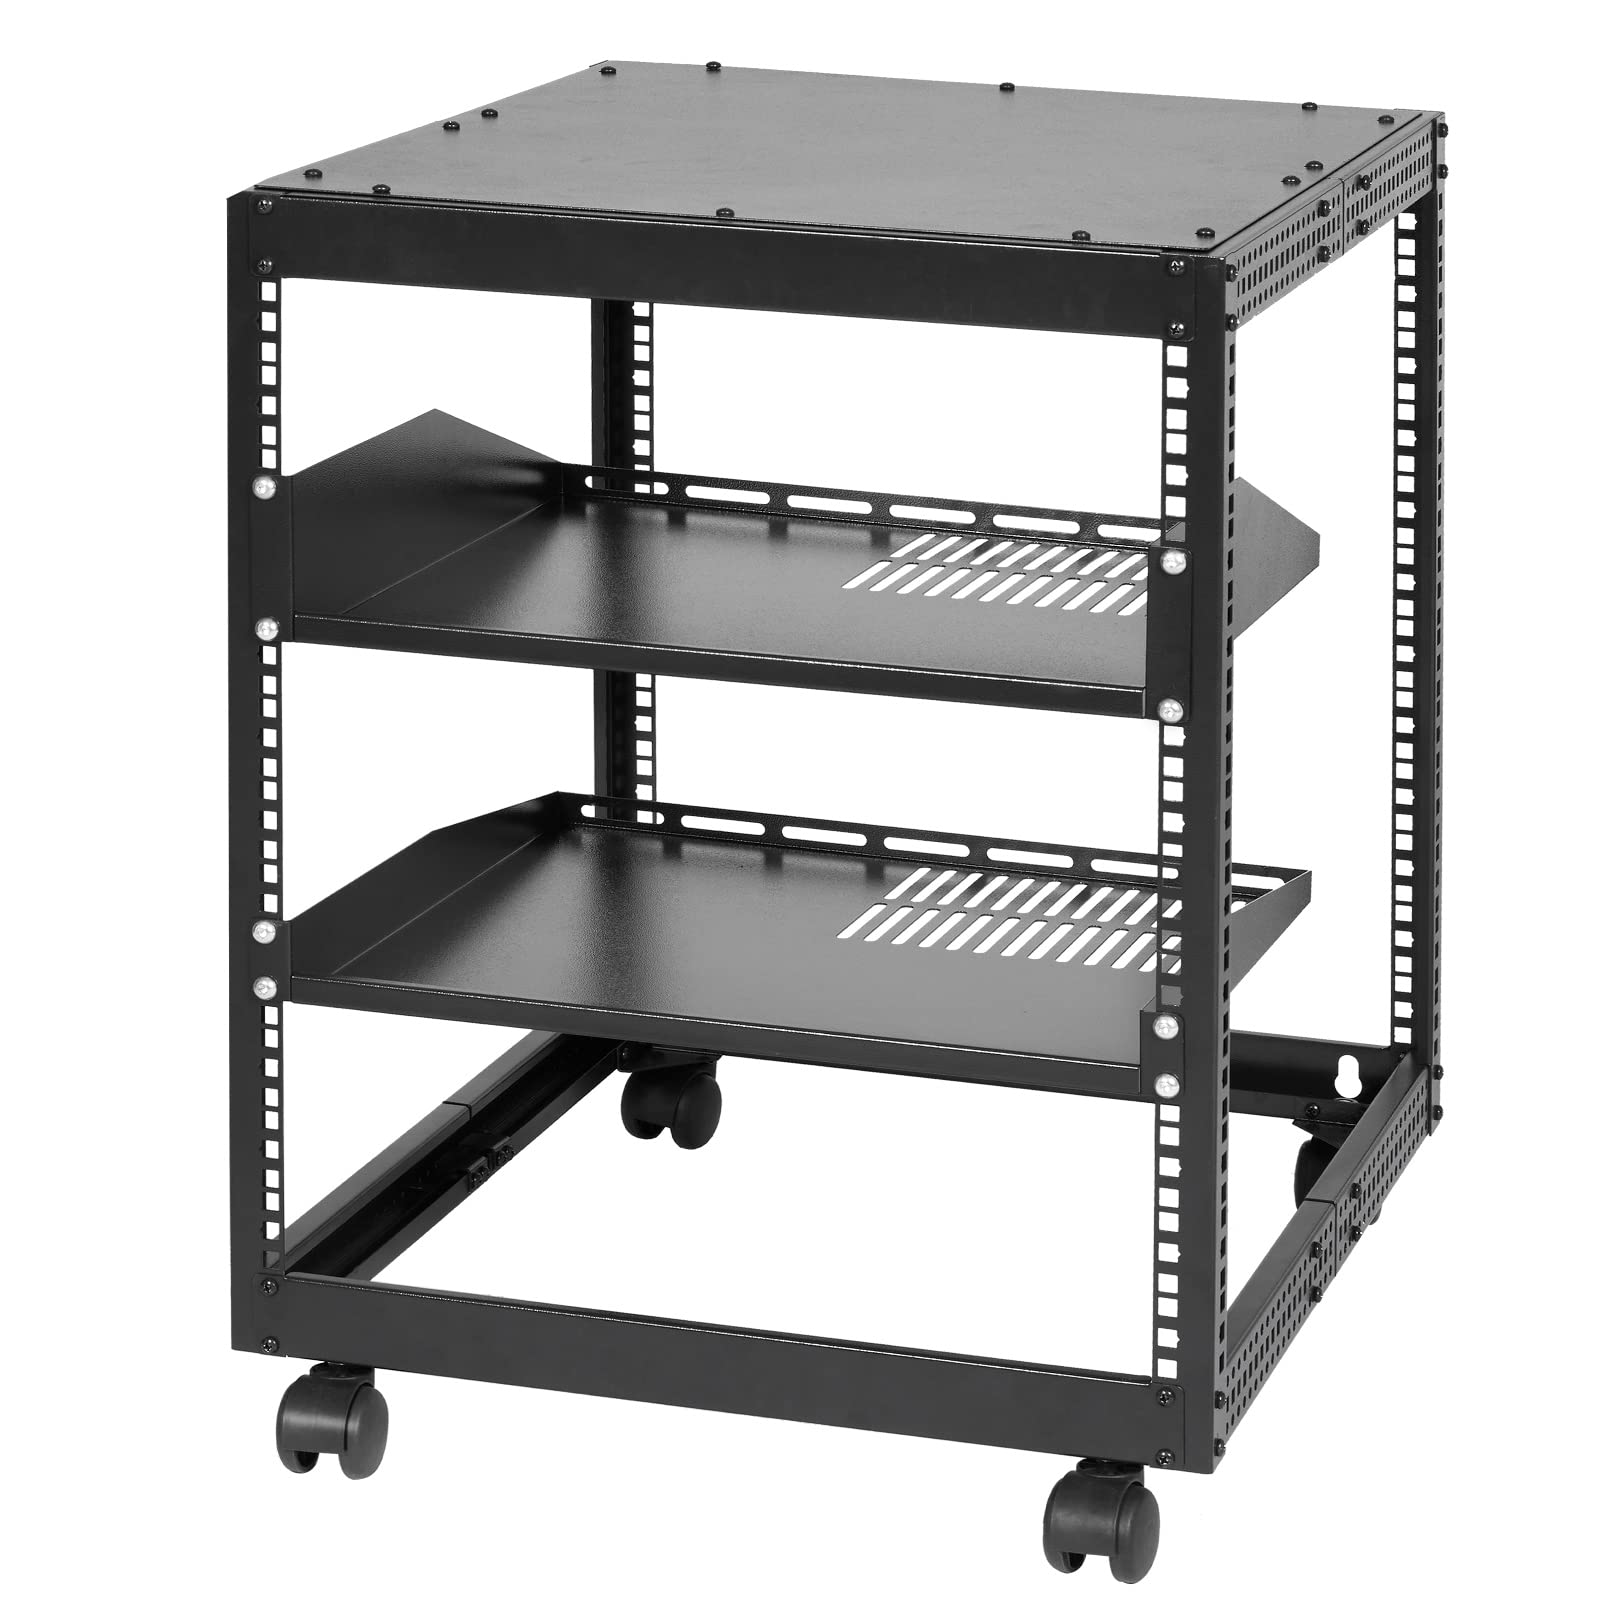 Server rack with load balancer